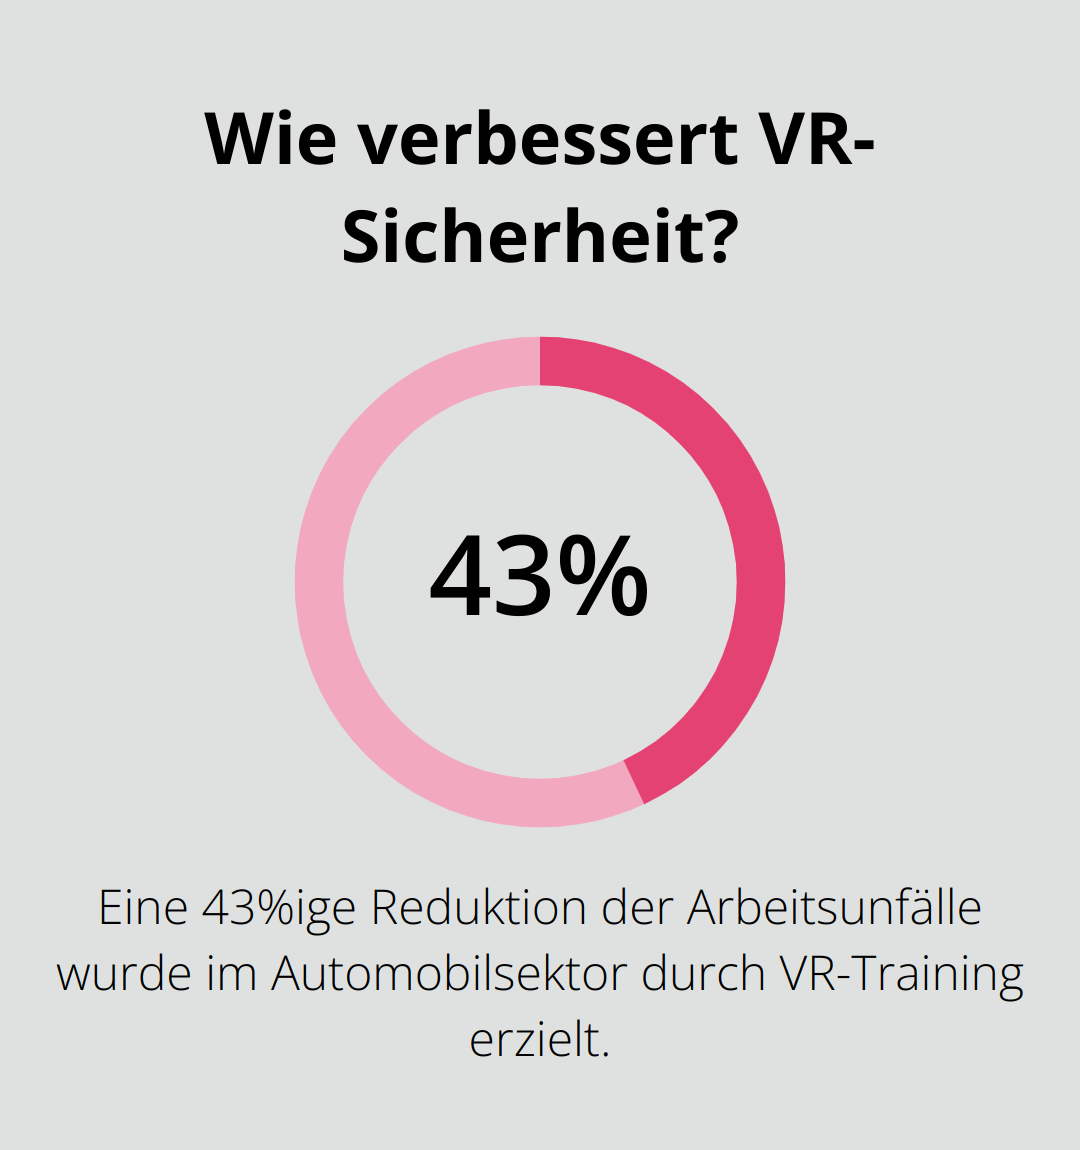 Wie verbessert VR-Sicherheit?